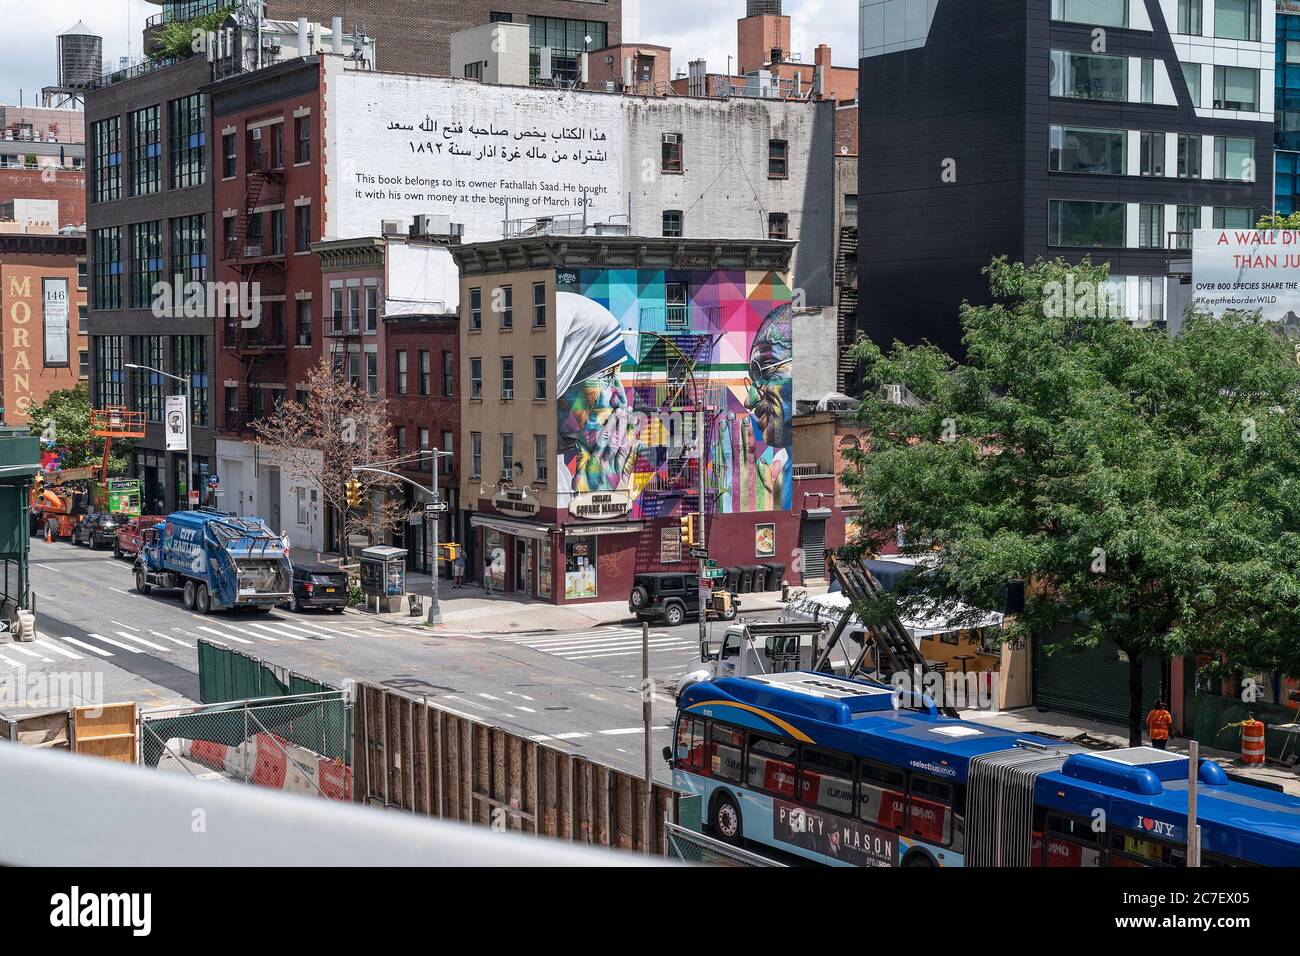 New York, USA. Juli 2020. Wandgemälde von Eduardo Kobra, das Mahatma Gandhi und Mutter Teresa vom High Line Park aus zeigt, während es mit begrenzter Kapazität für die Öffentlichkeit wieder geöffnet wird, nachdem es im März inmitten von Covid-19 vorübergehend geschlossen wurde. Park ist öffentlich, aber durch private Investitionen finanziert. Strenge soziale Distanzierungsregeln sind vorhanden und Besucher müssen im Voraus online ein kostenloses Zeitfahrkarte reservieren. Das Tragen einer Maske ist obligatorisch und grüne Punkte sind auf dem Boden sechs Meter auseinander platziert, um Besucher getrennt zu halten. Kredit: Pacific Presseagentur/Alamy Live Nachrichten Stockfoto